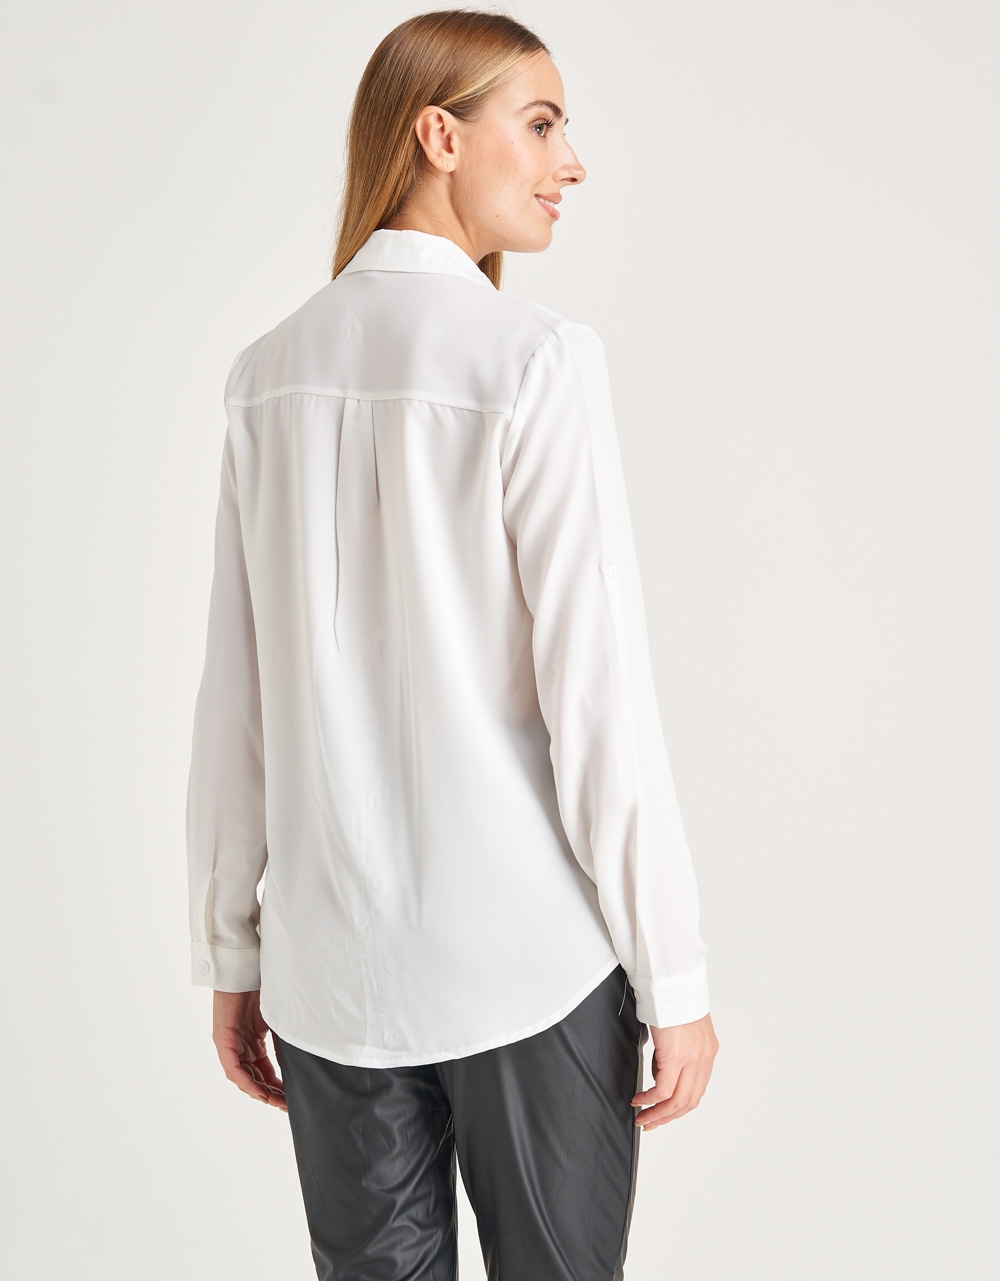 Εικόνα από Basic μονόχρωμο πουκάμισο Λευκό